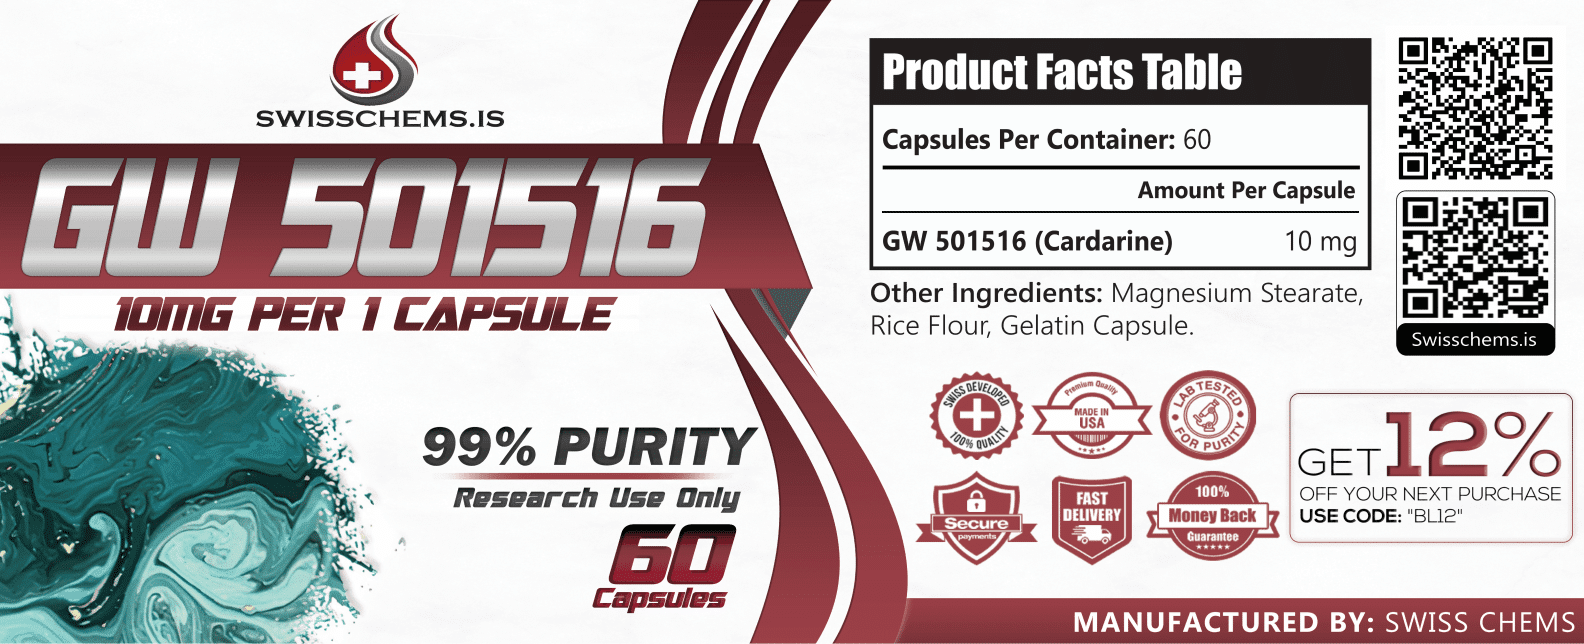 GW-501516 (Cardarine), 600mg/60 capsules (10mg/1 capsule) 2